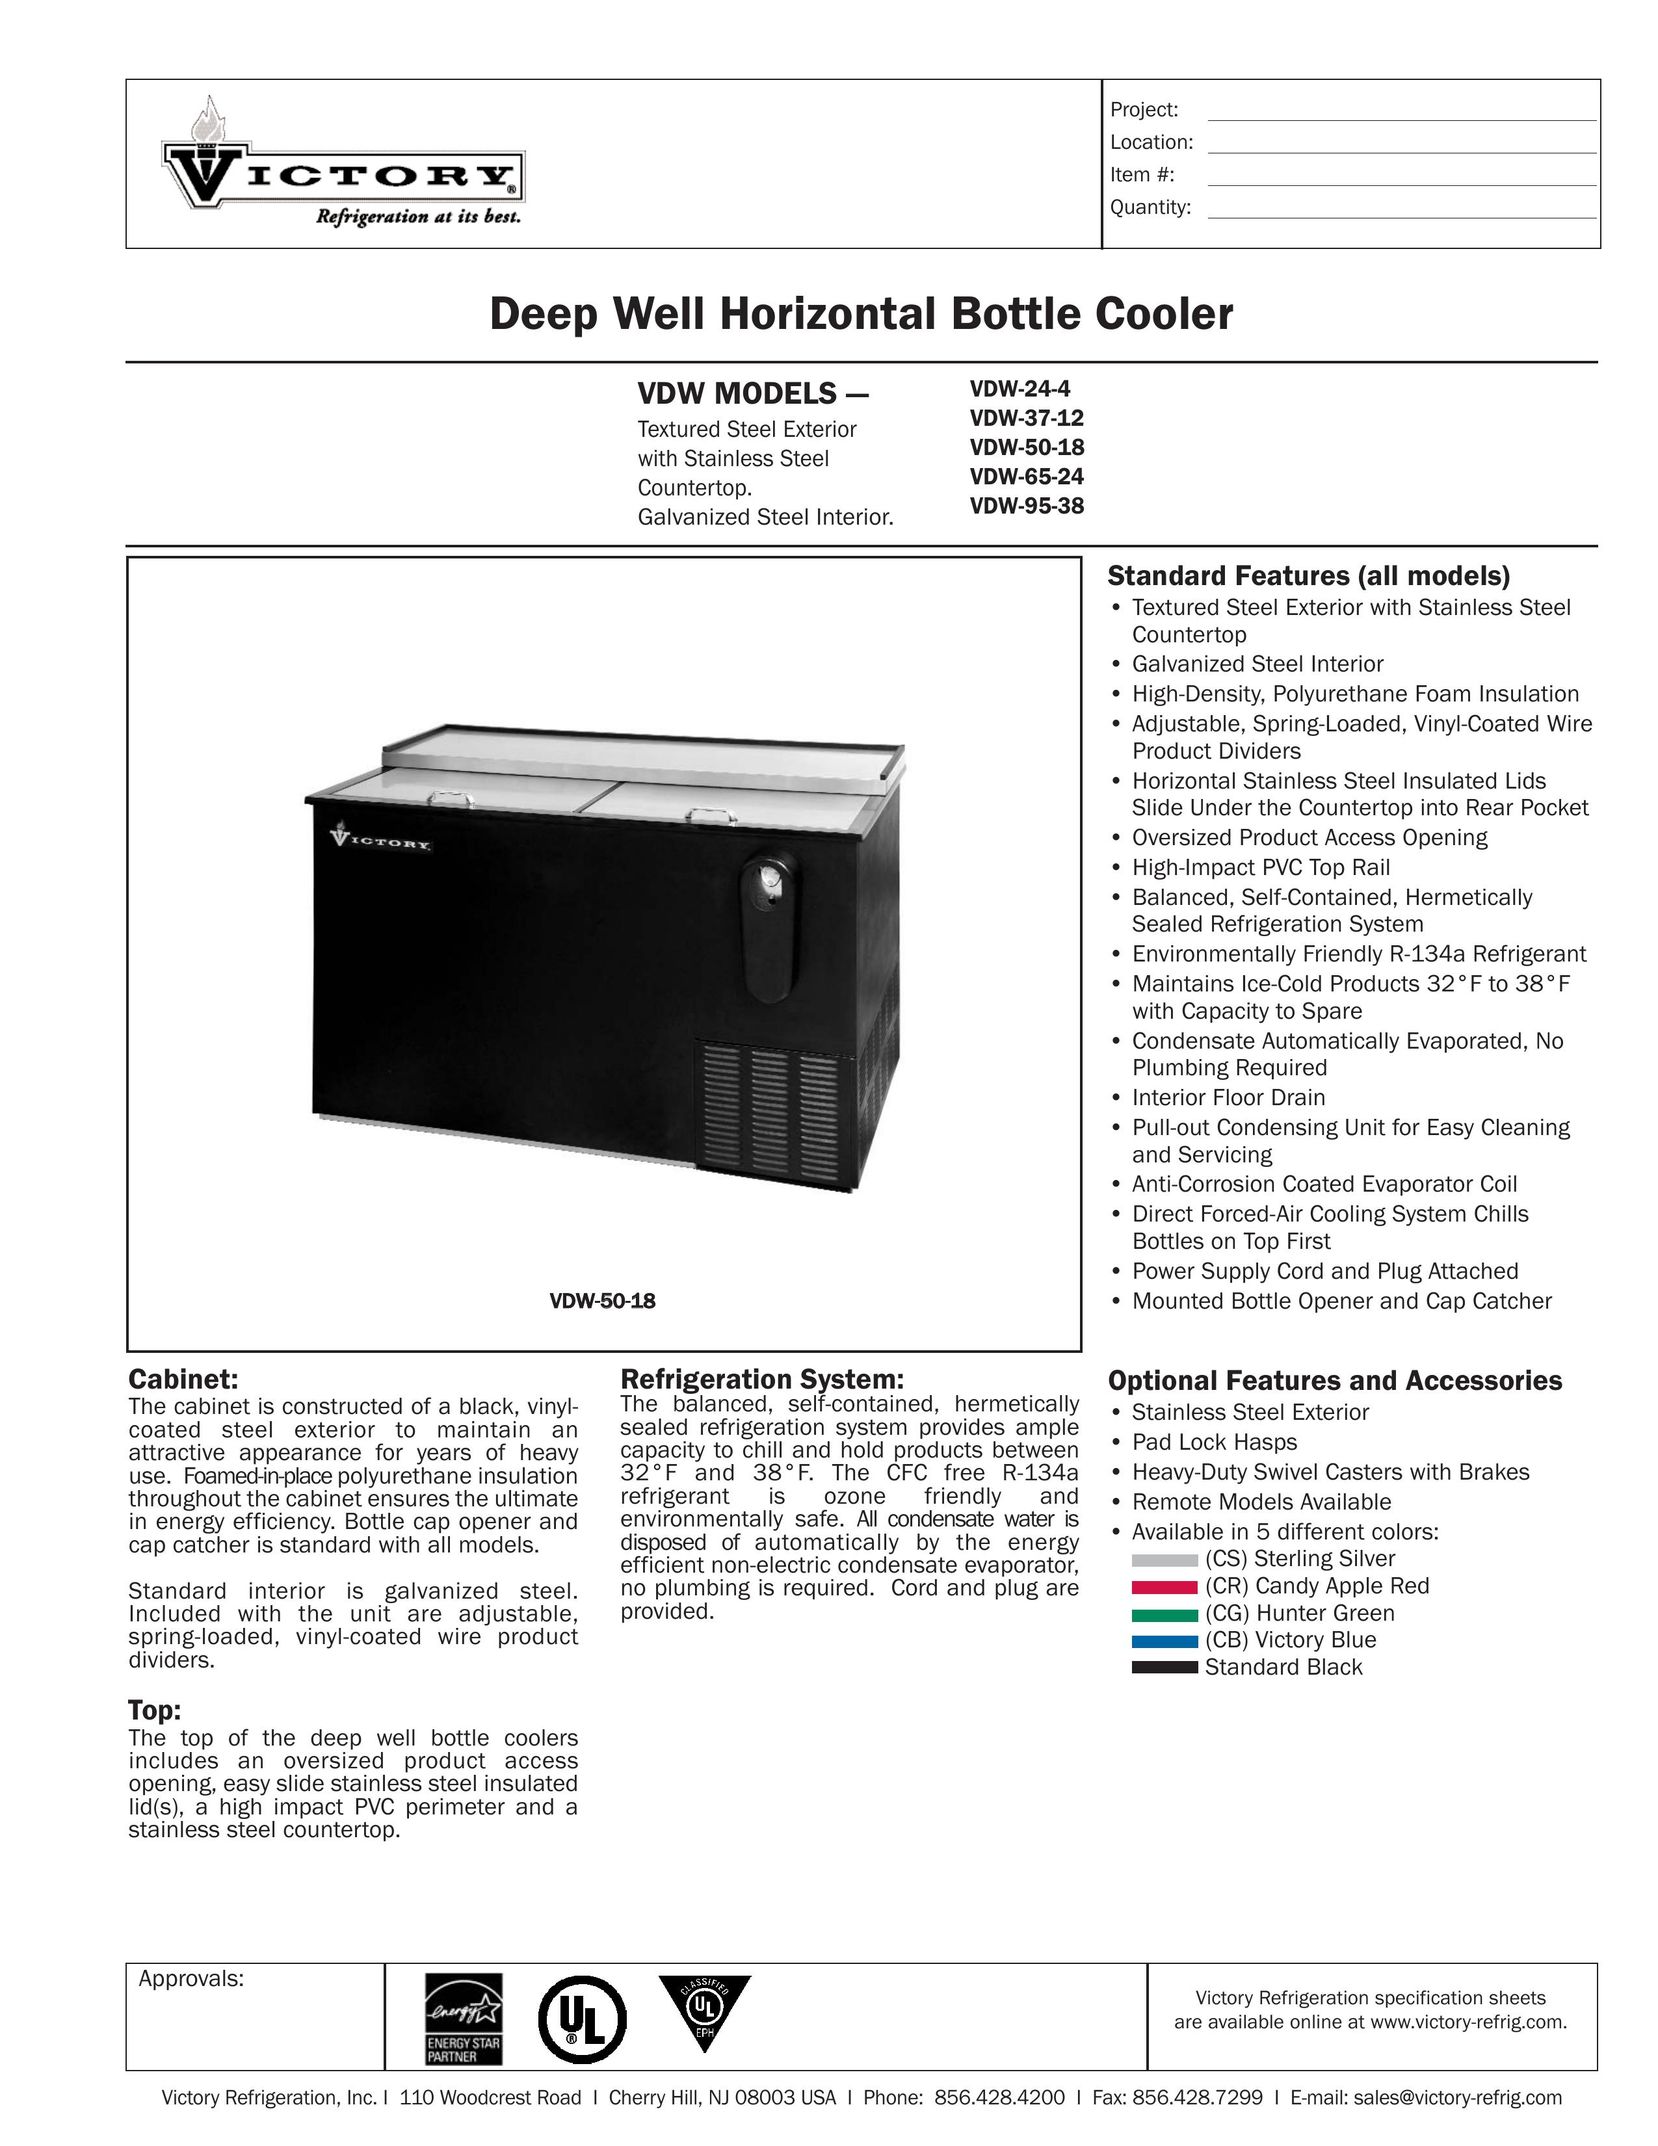 Victory Refrigeration VDW-65-24 Beverage Dispenser User Manual